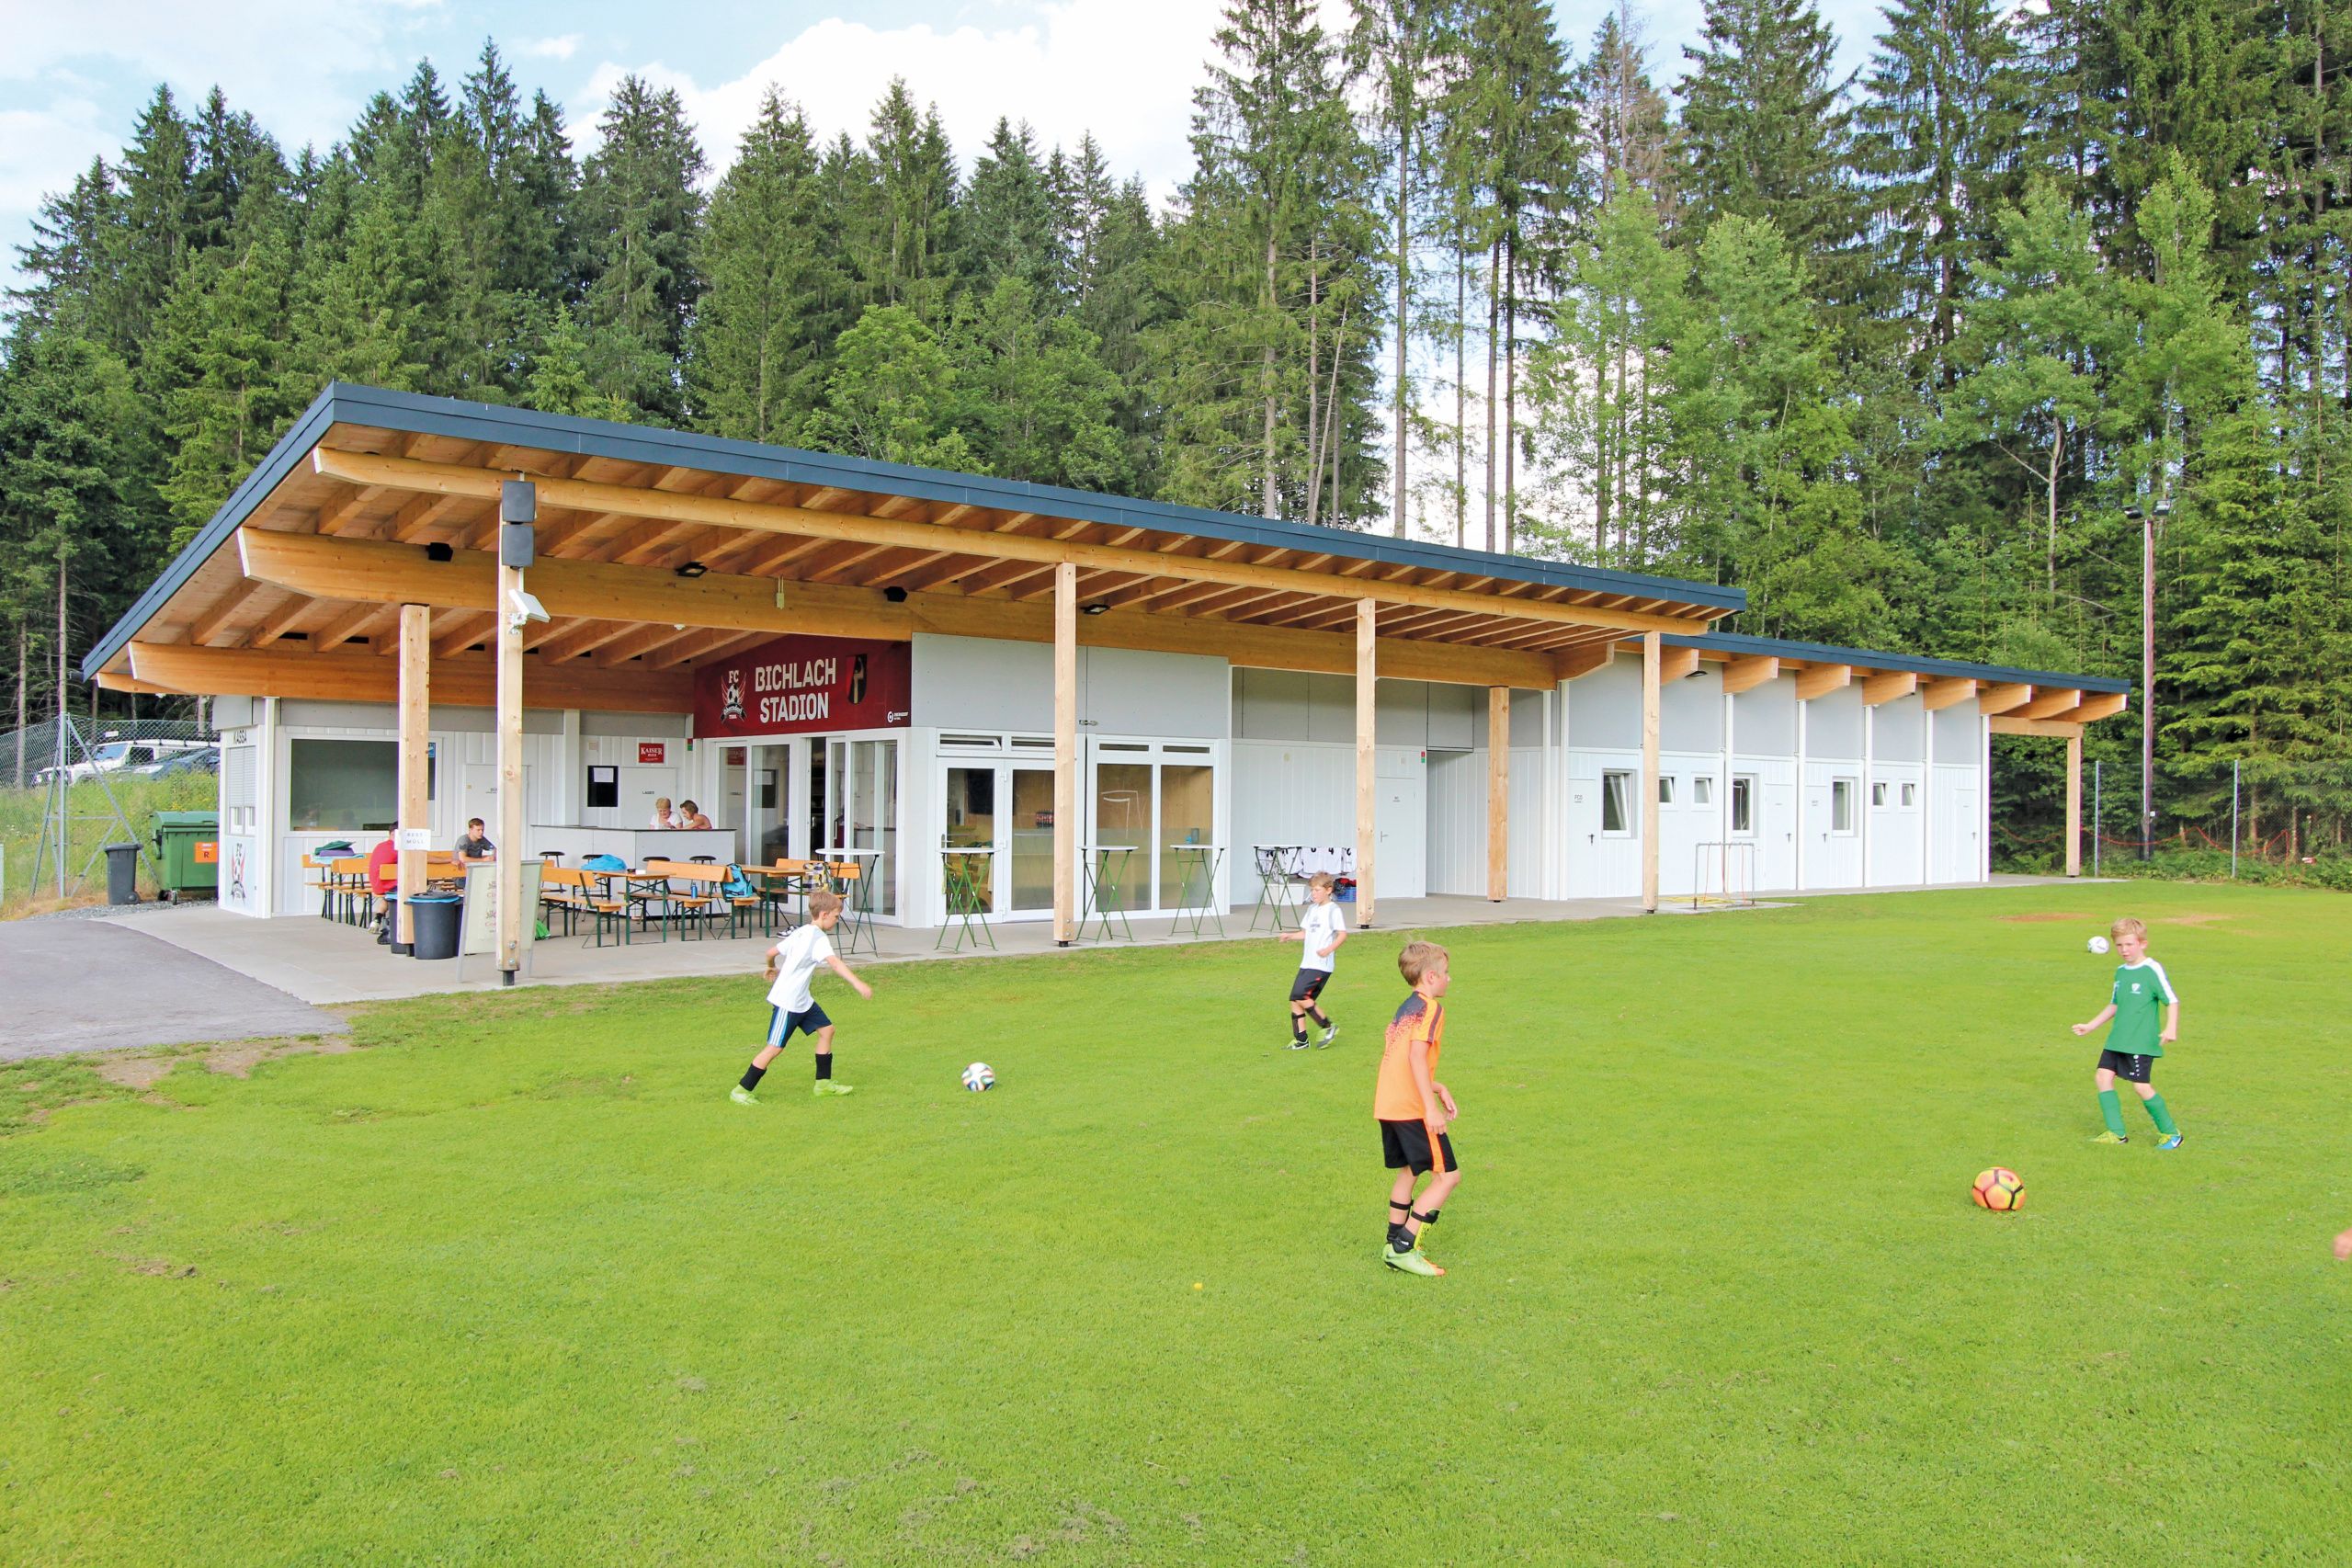 Club accomodation for the "FC Oberndorf" football club, Oberndorf (AT) in Tyrol